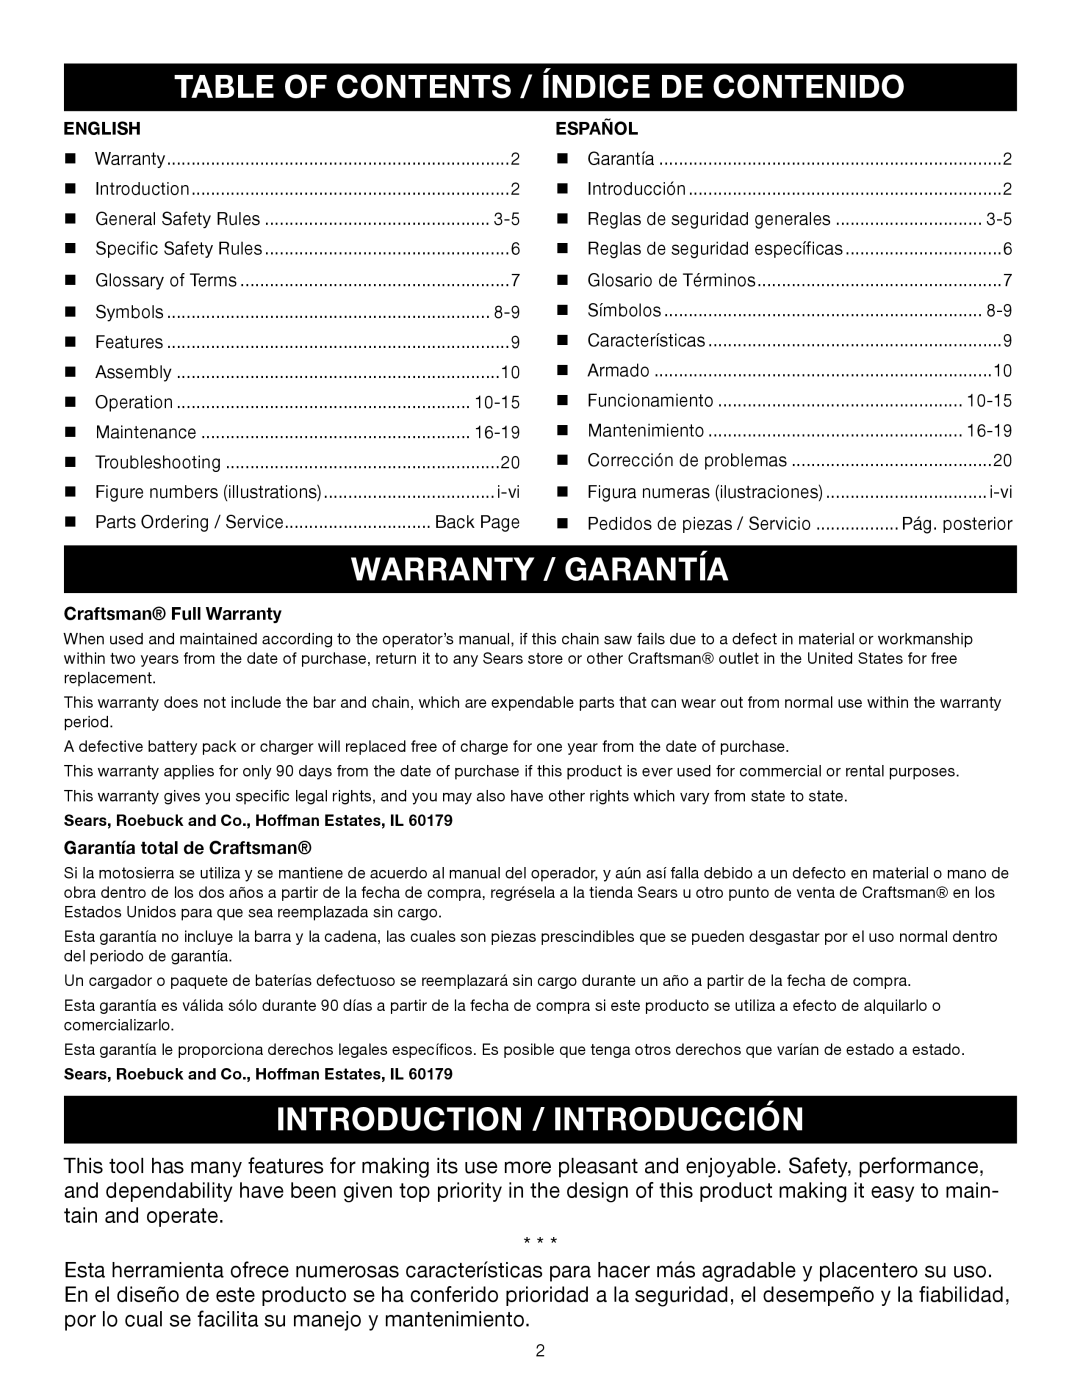 Craftsman 315.3413 Table Of Contents / Índice De Contenido, Warranty / Garantía, Introduction / Introducción, English 